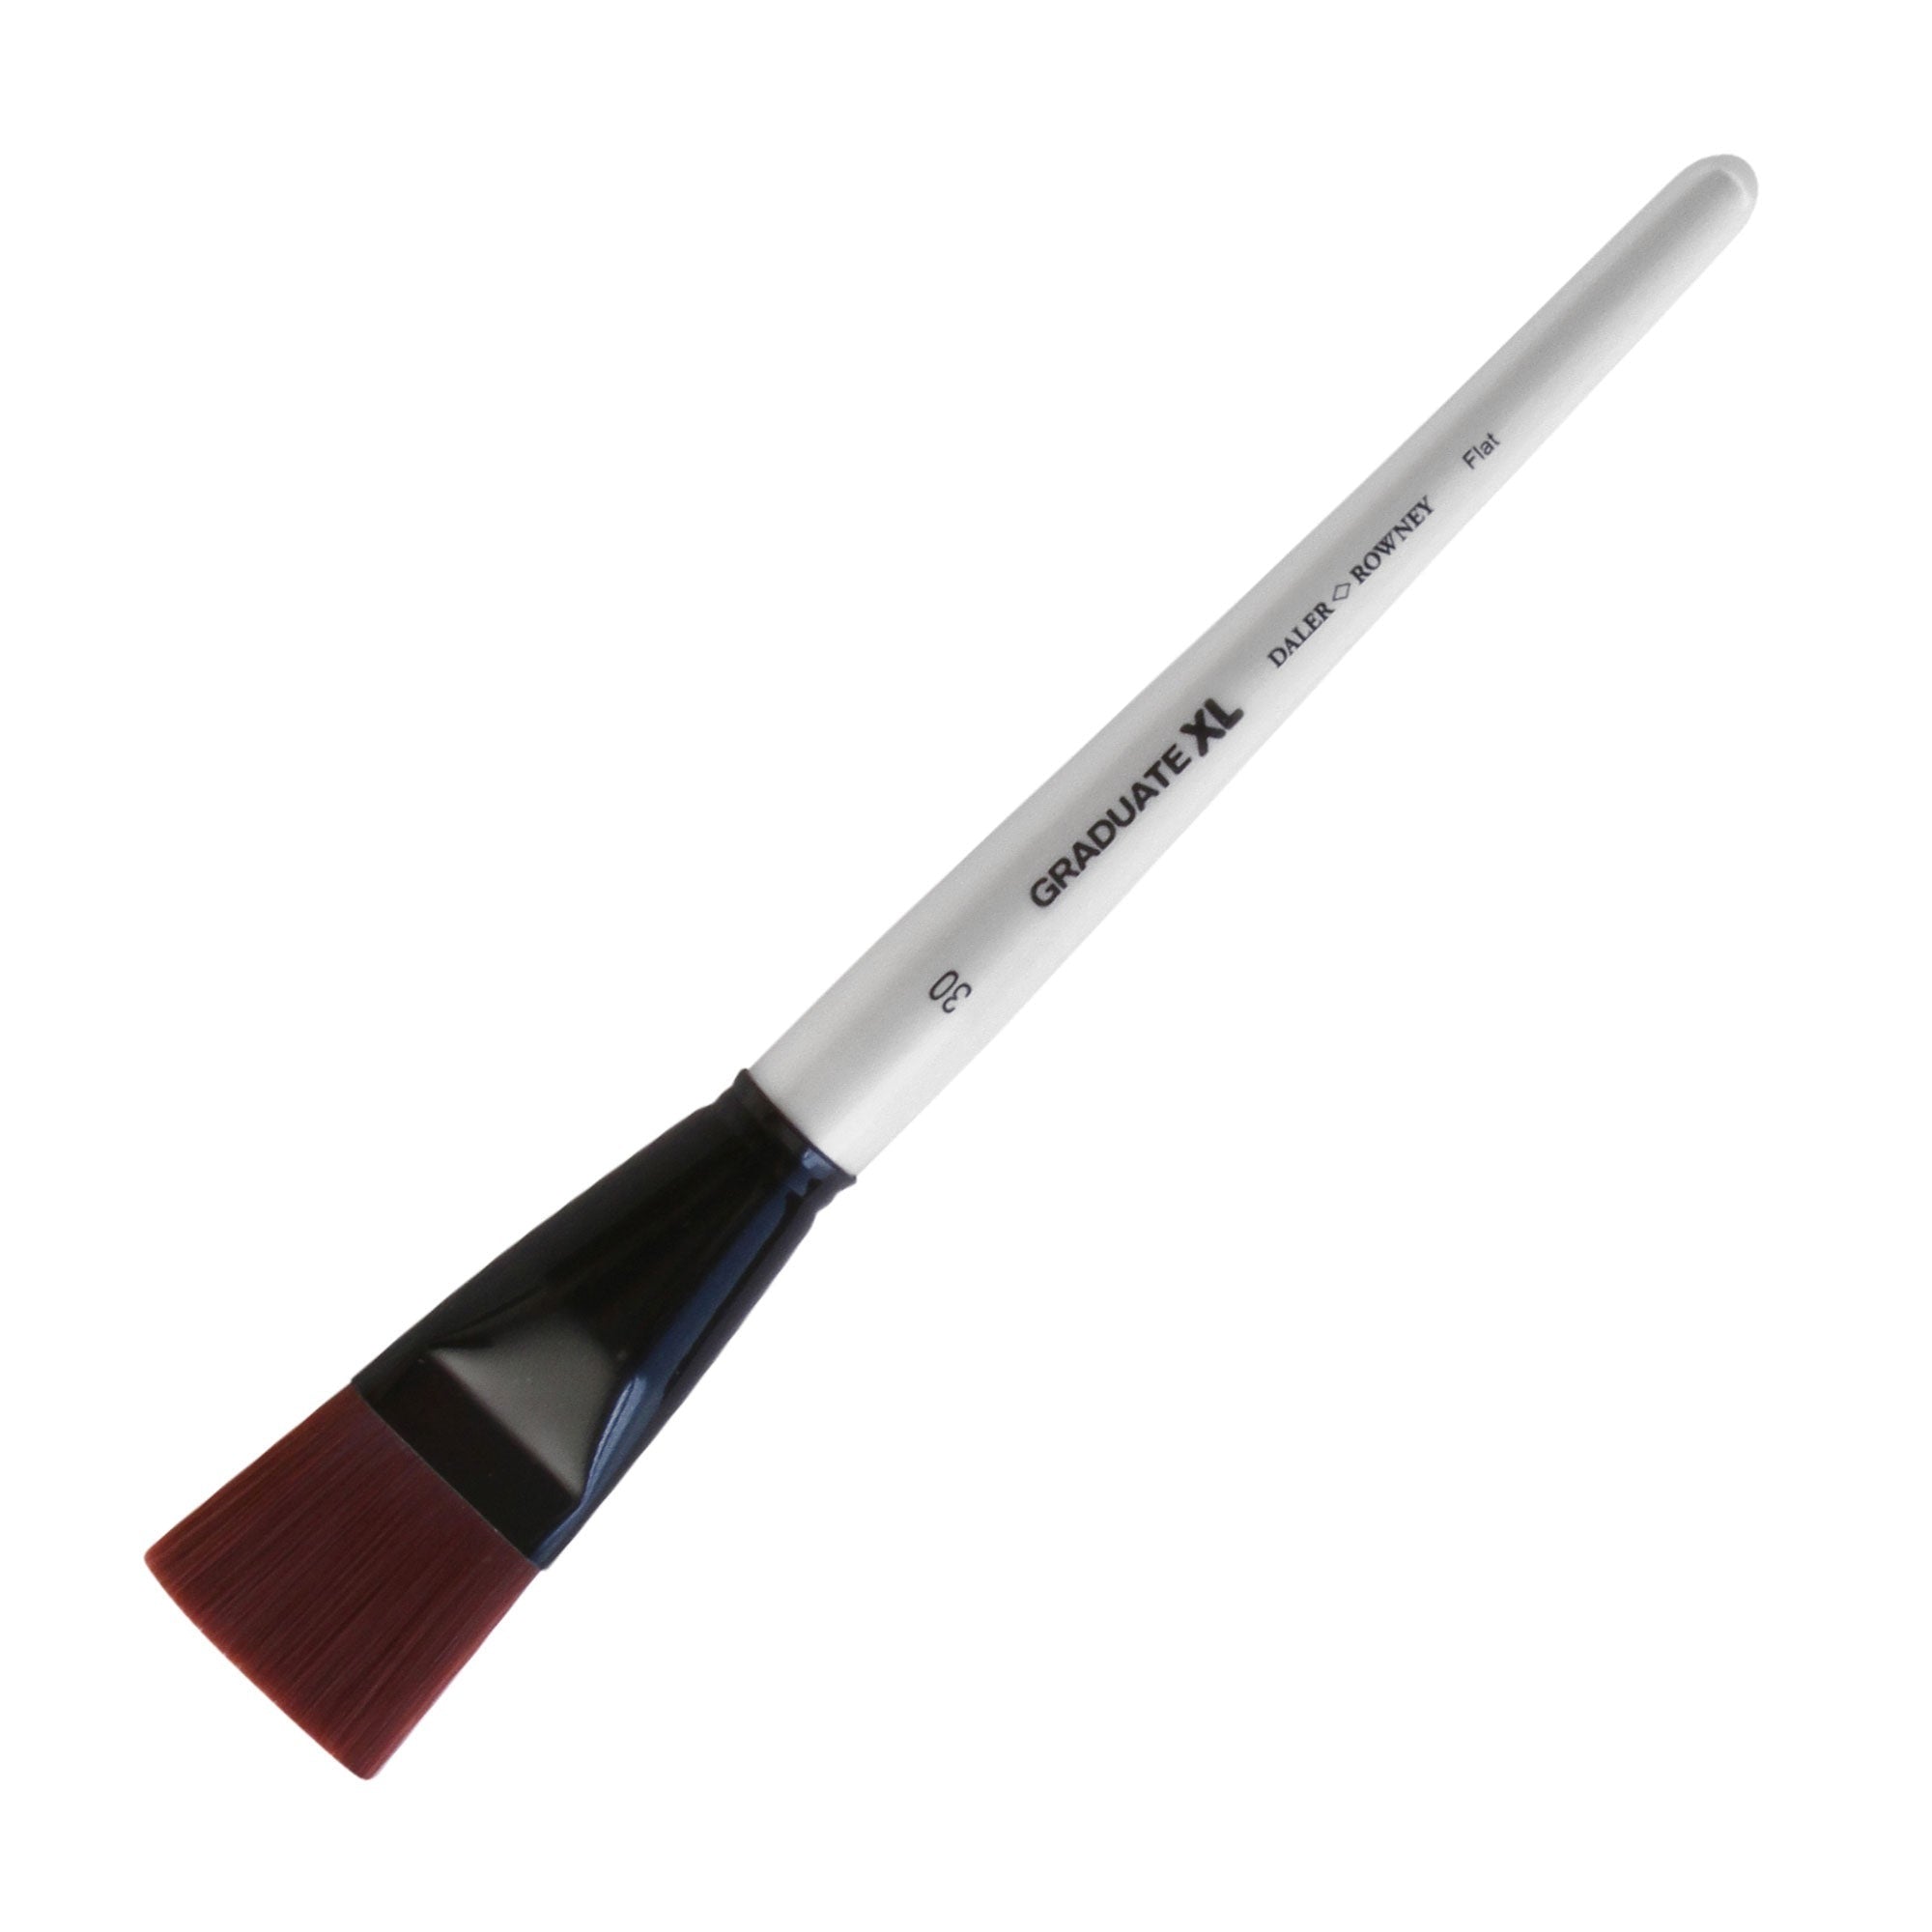 Daler-Rowney Graduate XL Stiff Synthetic Flat Brushes - Size 30